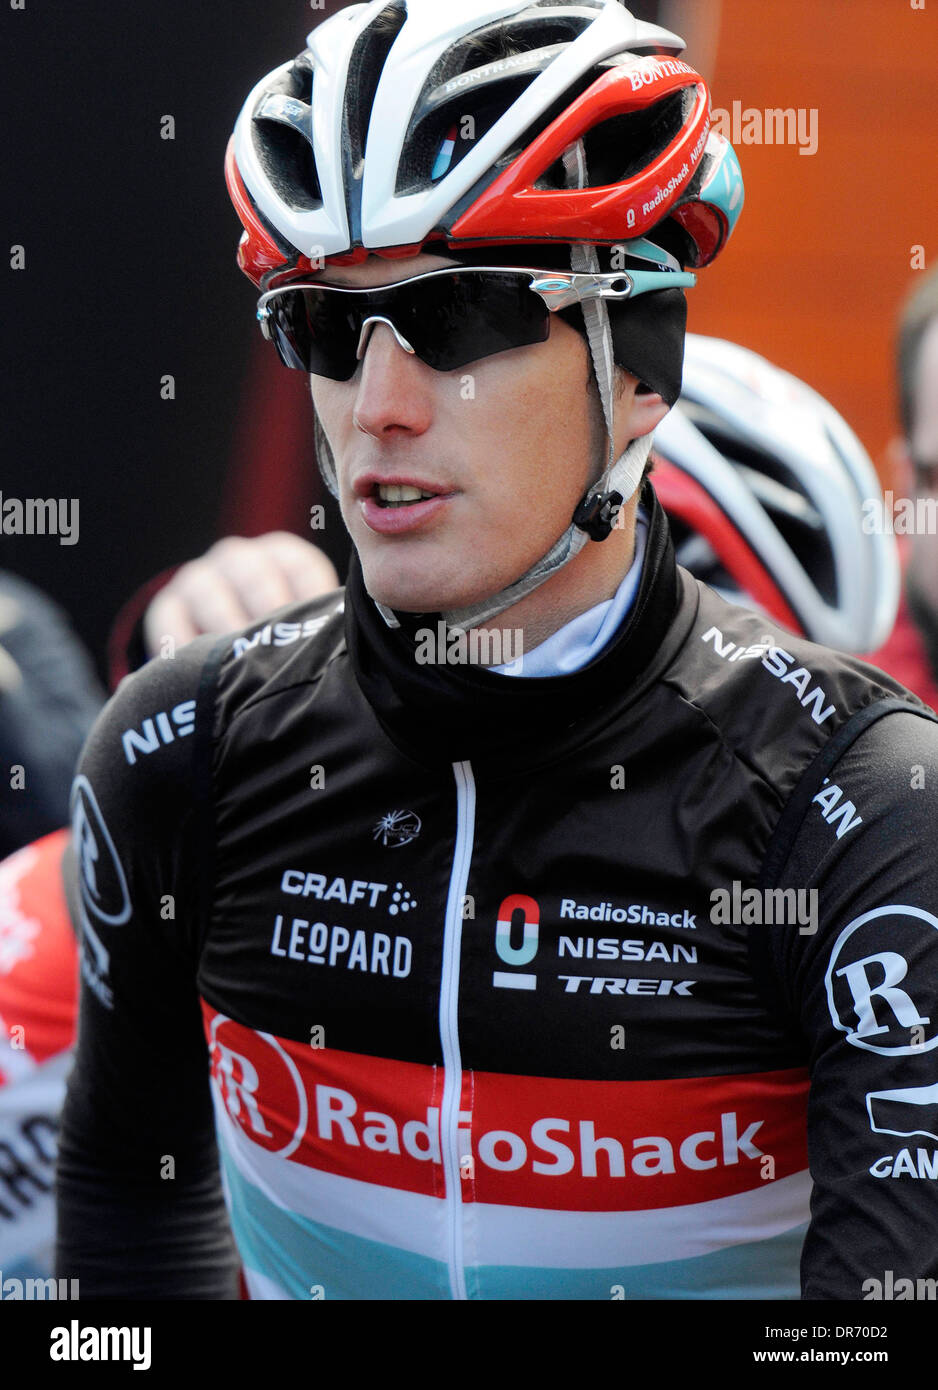 Andy Schleck, Profi-Radsportler bei der Mallorca Challenge im Jahr 2012. Stockfoto